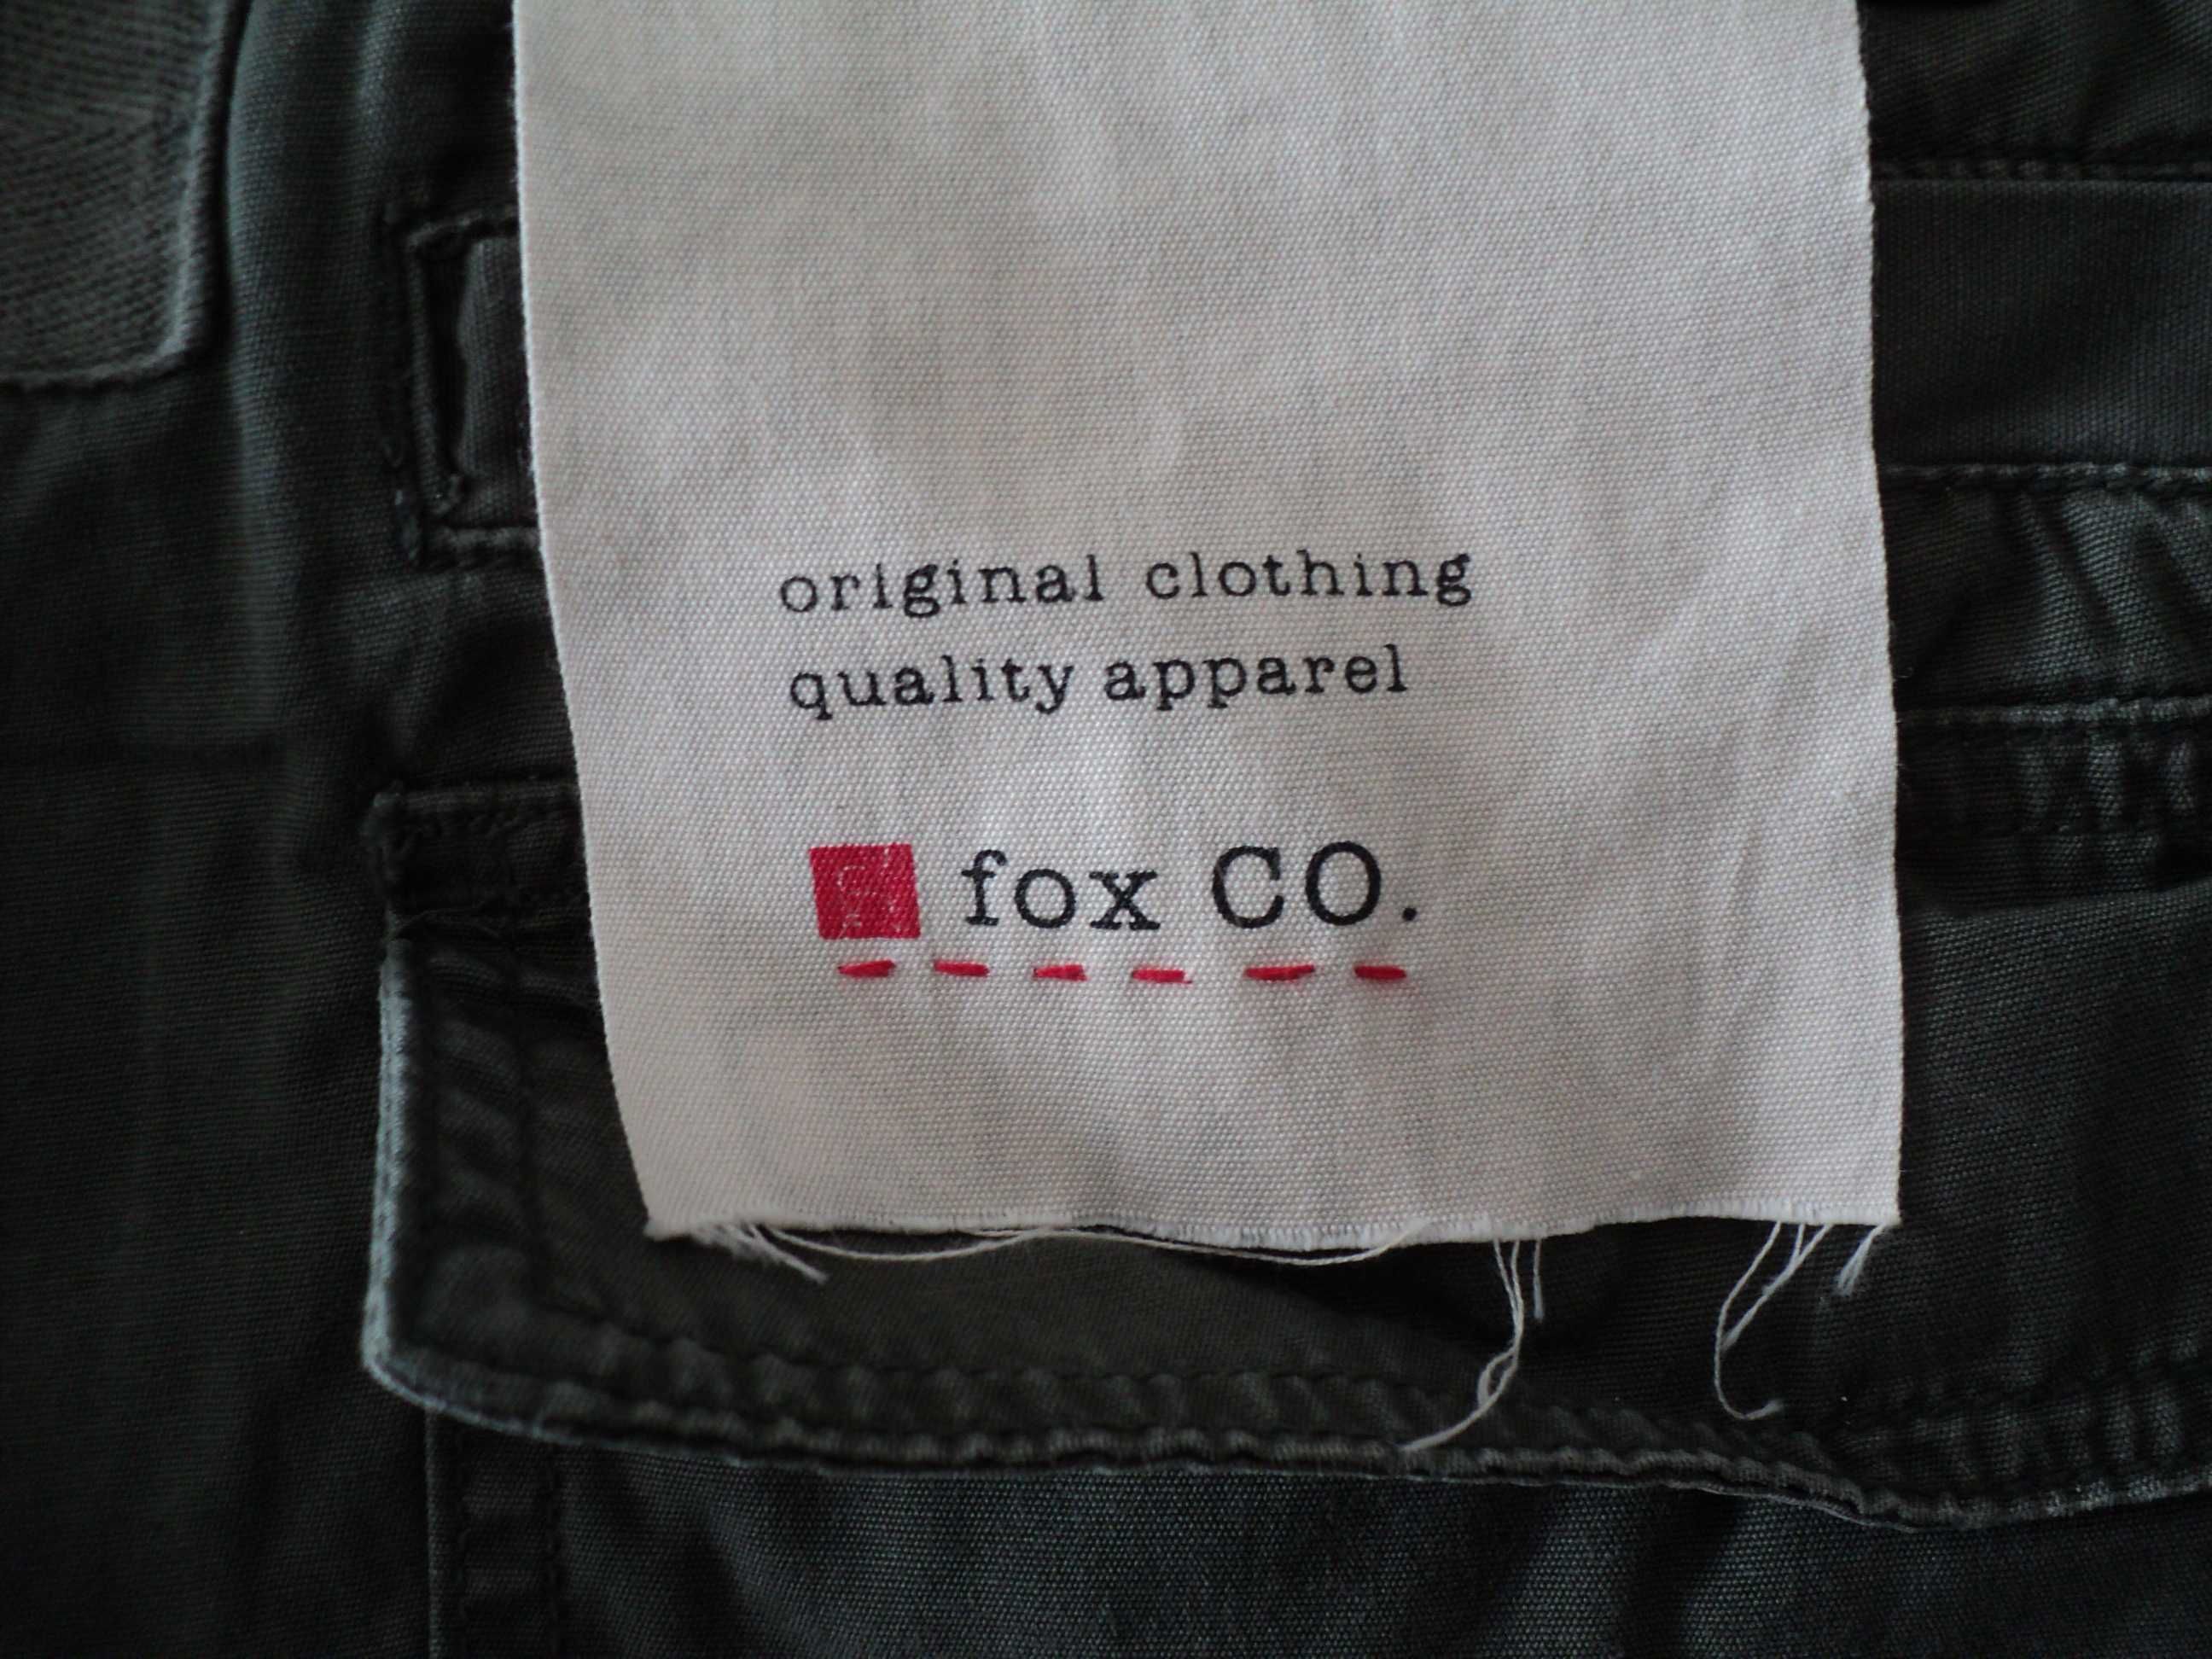 Pantaloni FOX originali, abs. noi, mas. 40 / M, large fit, olive